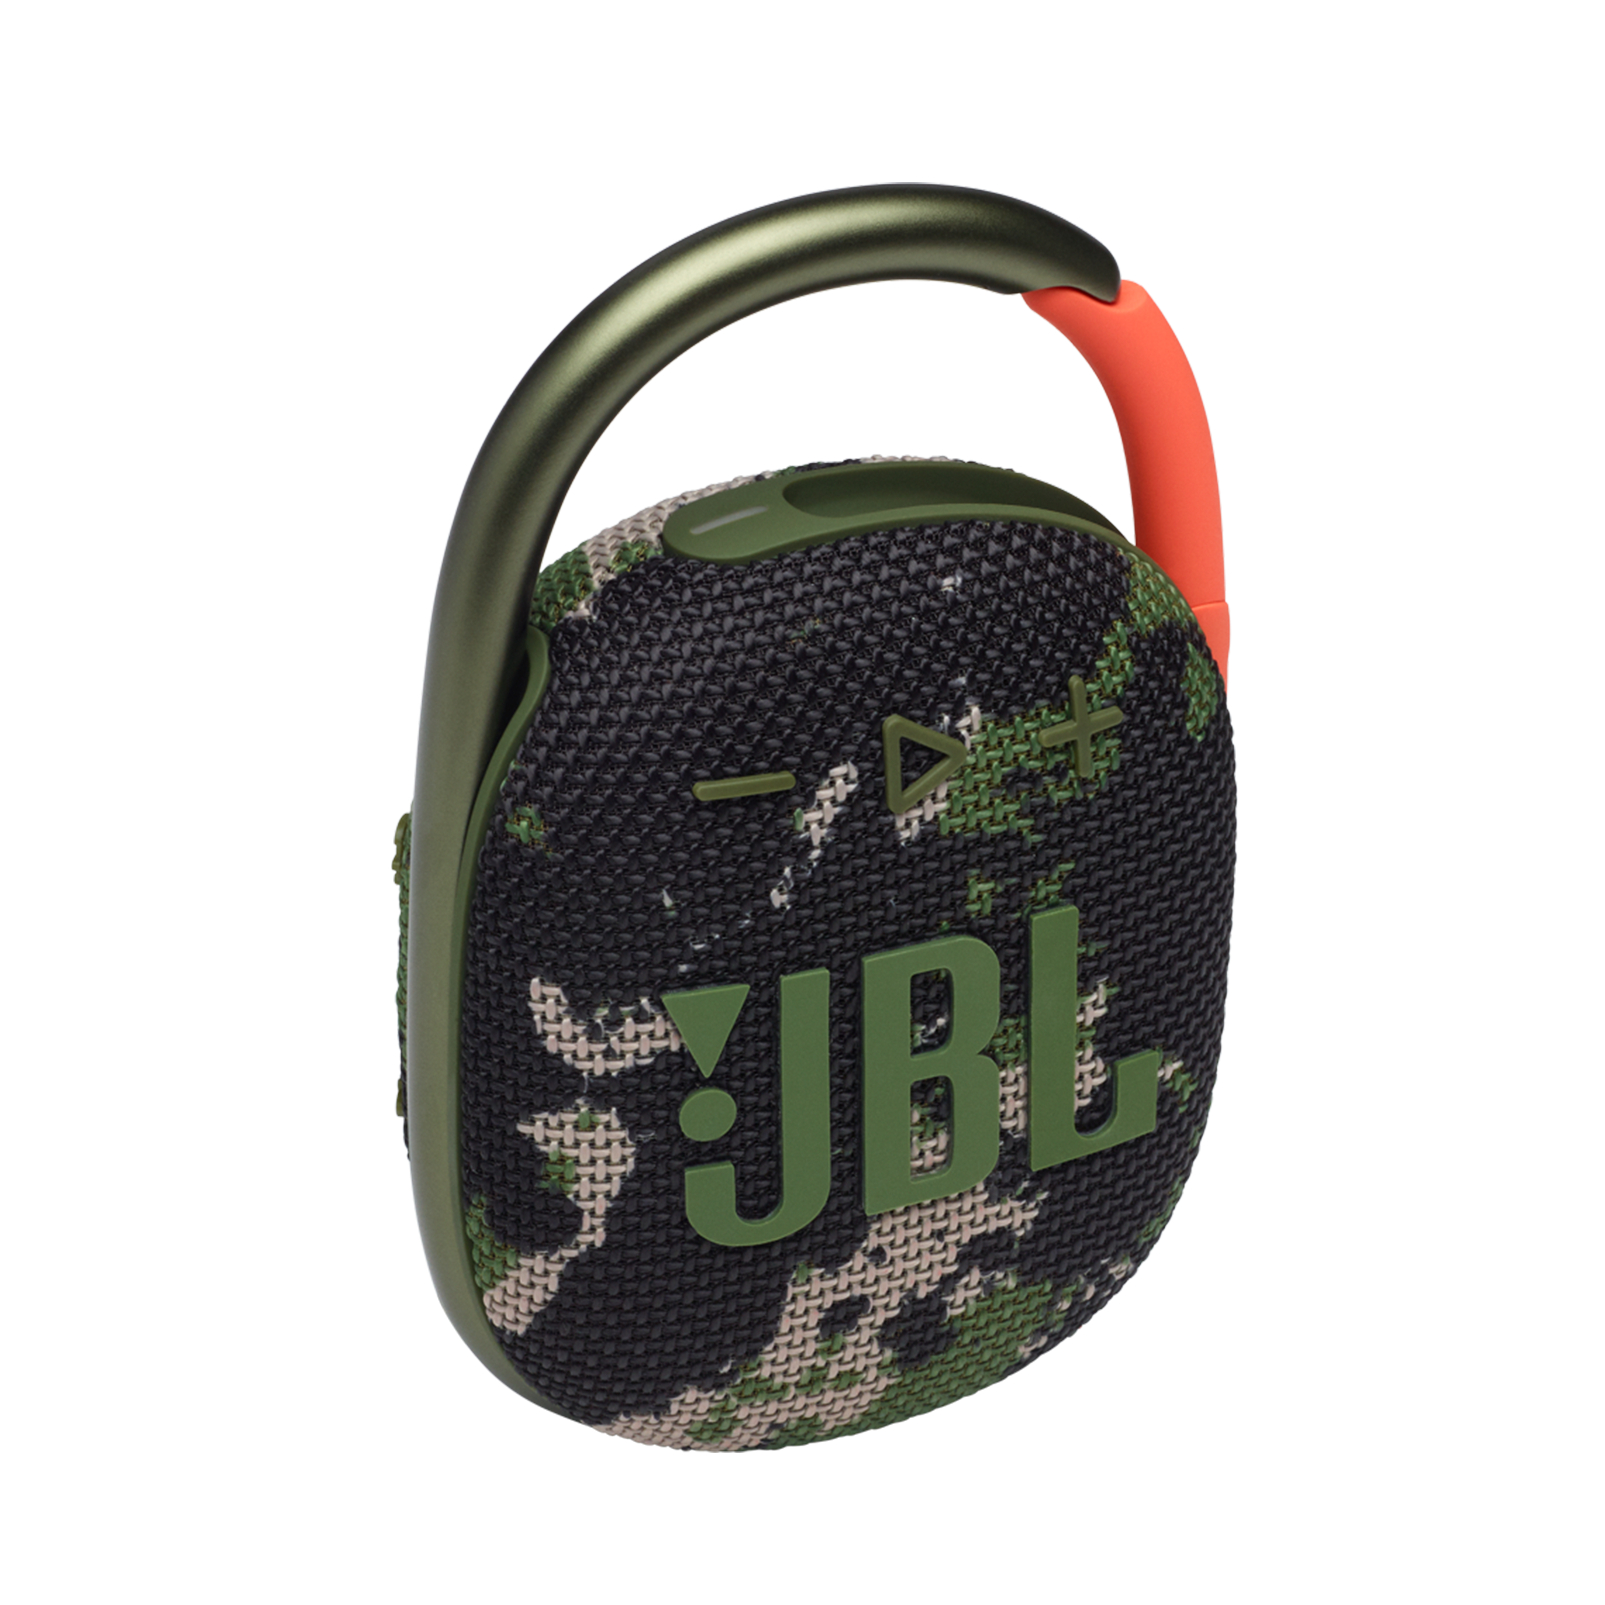 JBL Clip 4, Best Ultra-portable Wireless Bluetooth Waterproof Speaker